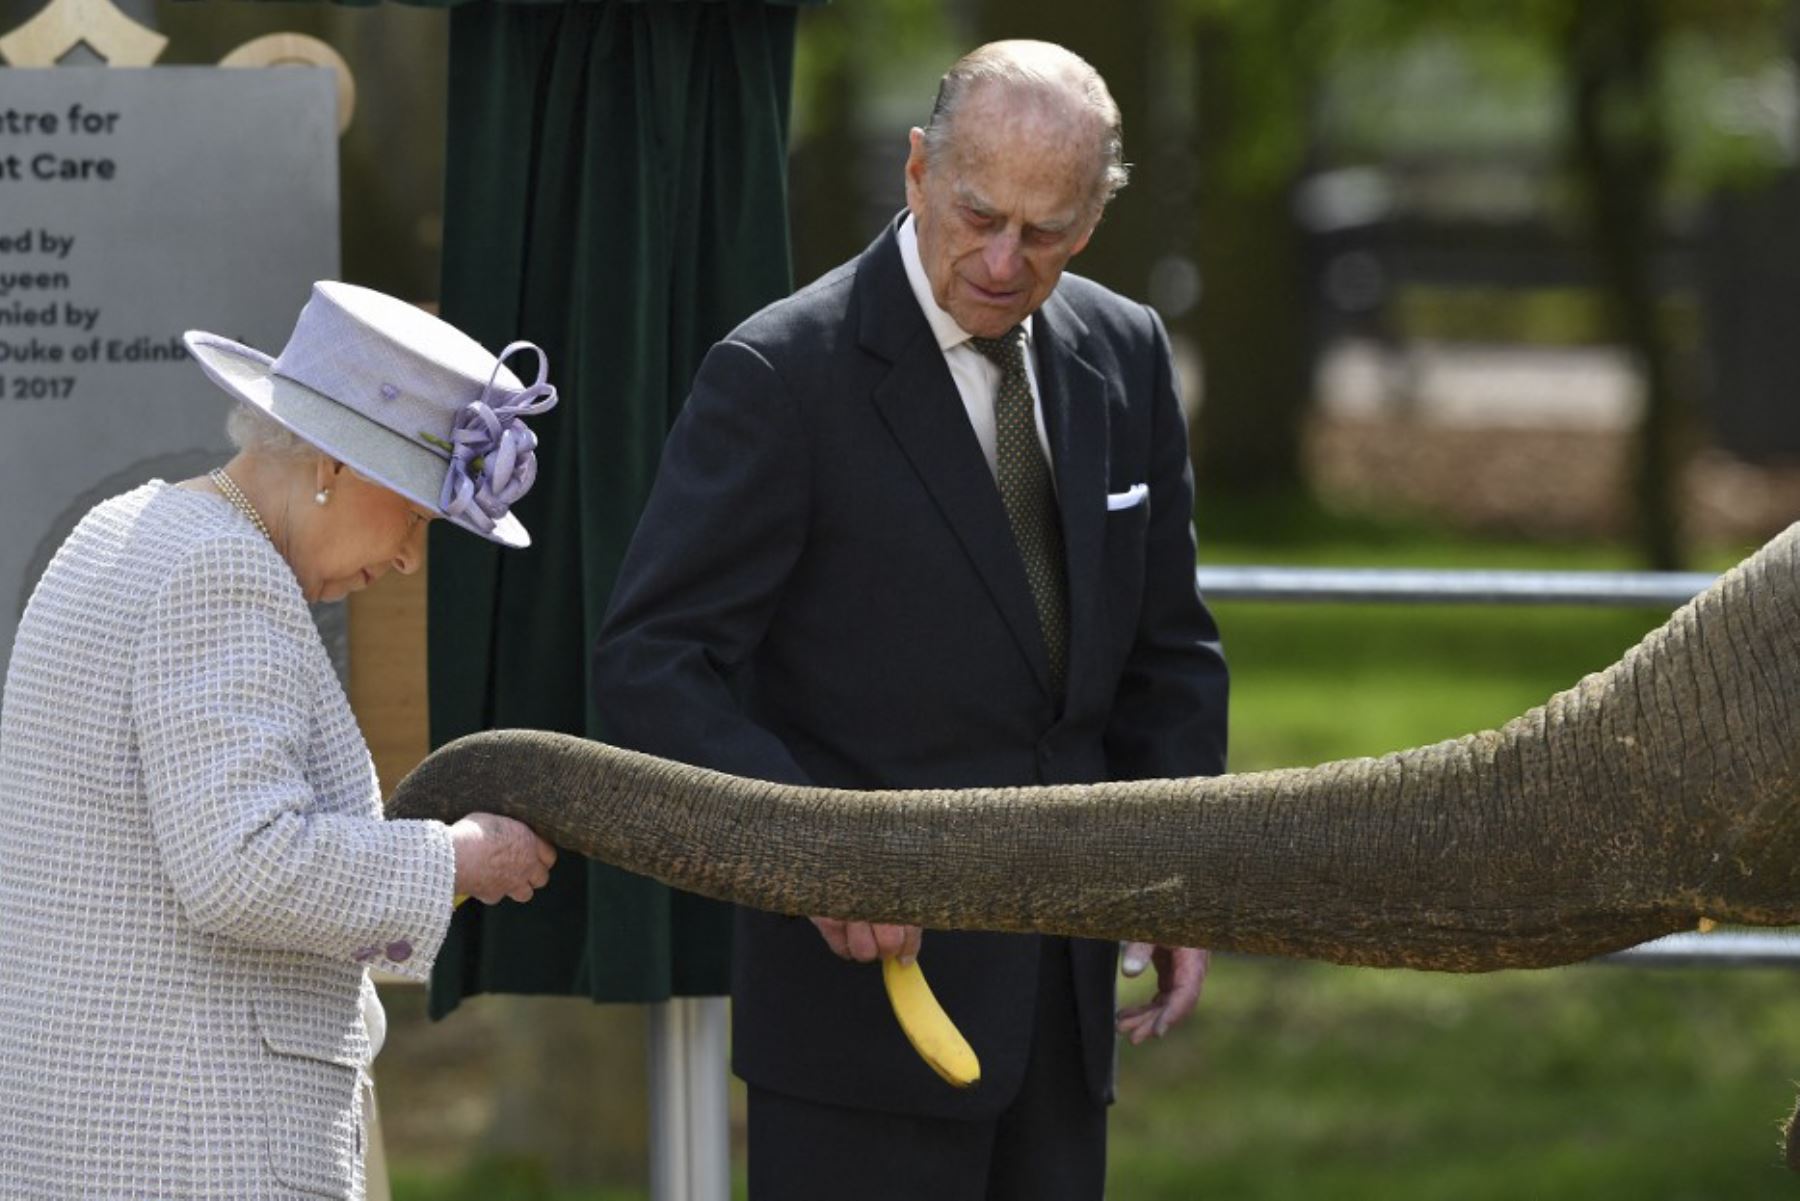 El príncipe Felipe de Gran Bretaña, duque de Edimburgo (C) observa cómo su esposa, la reina Isabel II de Gran Bretaña, alimenta a un elefante llamado 